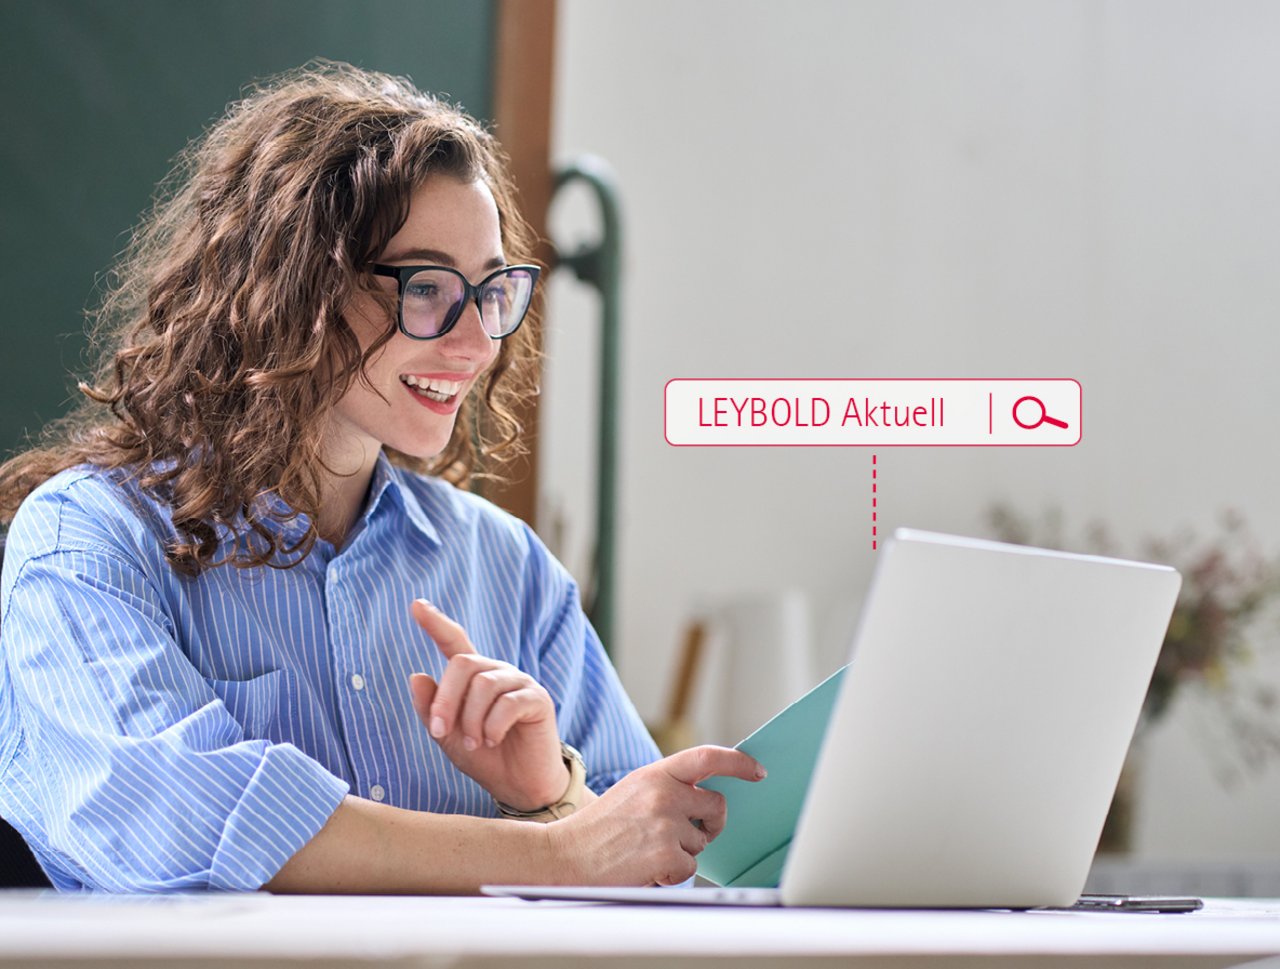 Eine Dame schaut sich auf der Leybold Website die neuesten Informationen auf einem Labtop an. Sie verwendet dazu die Suche. 